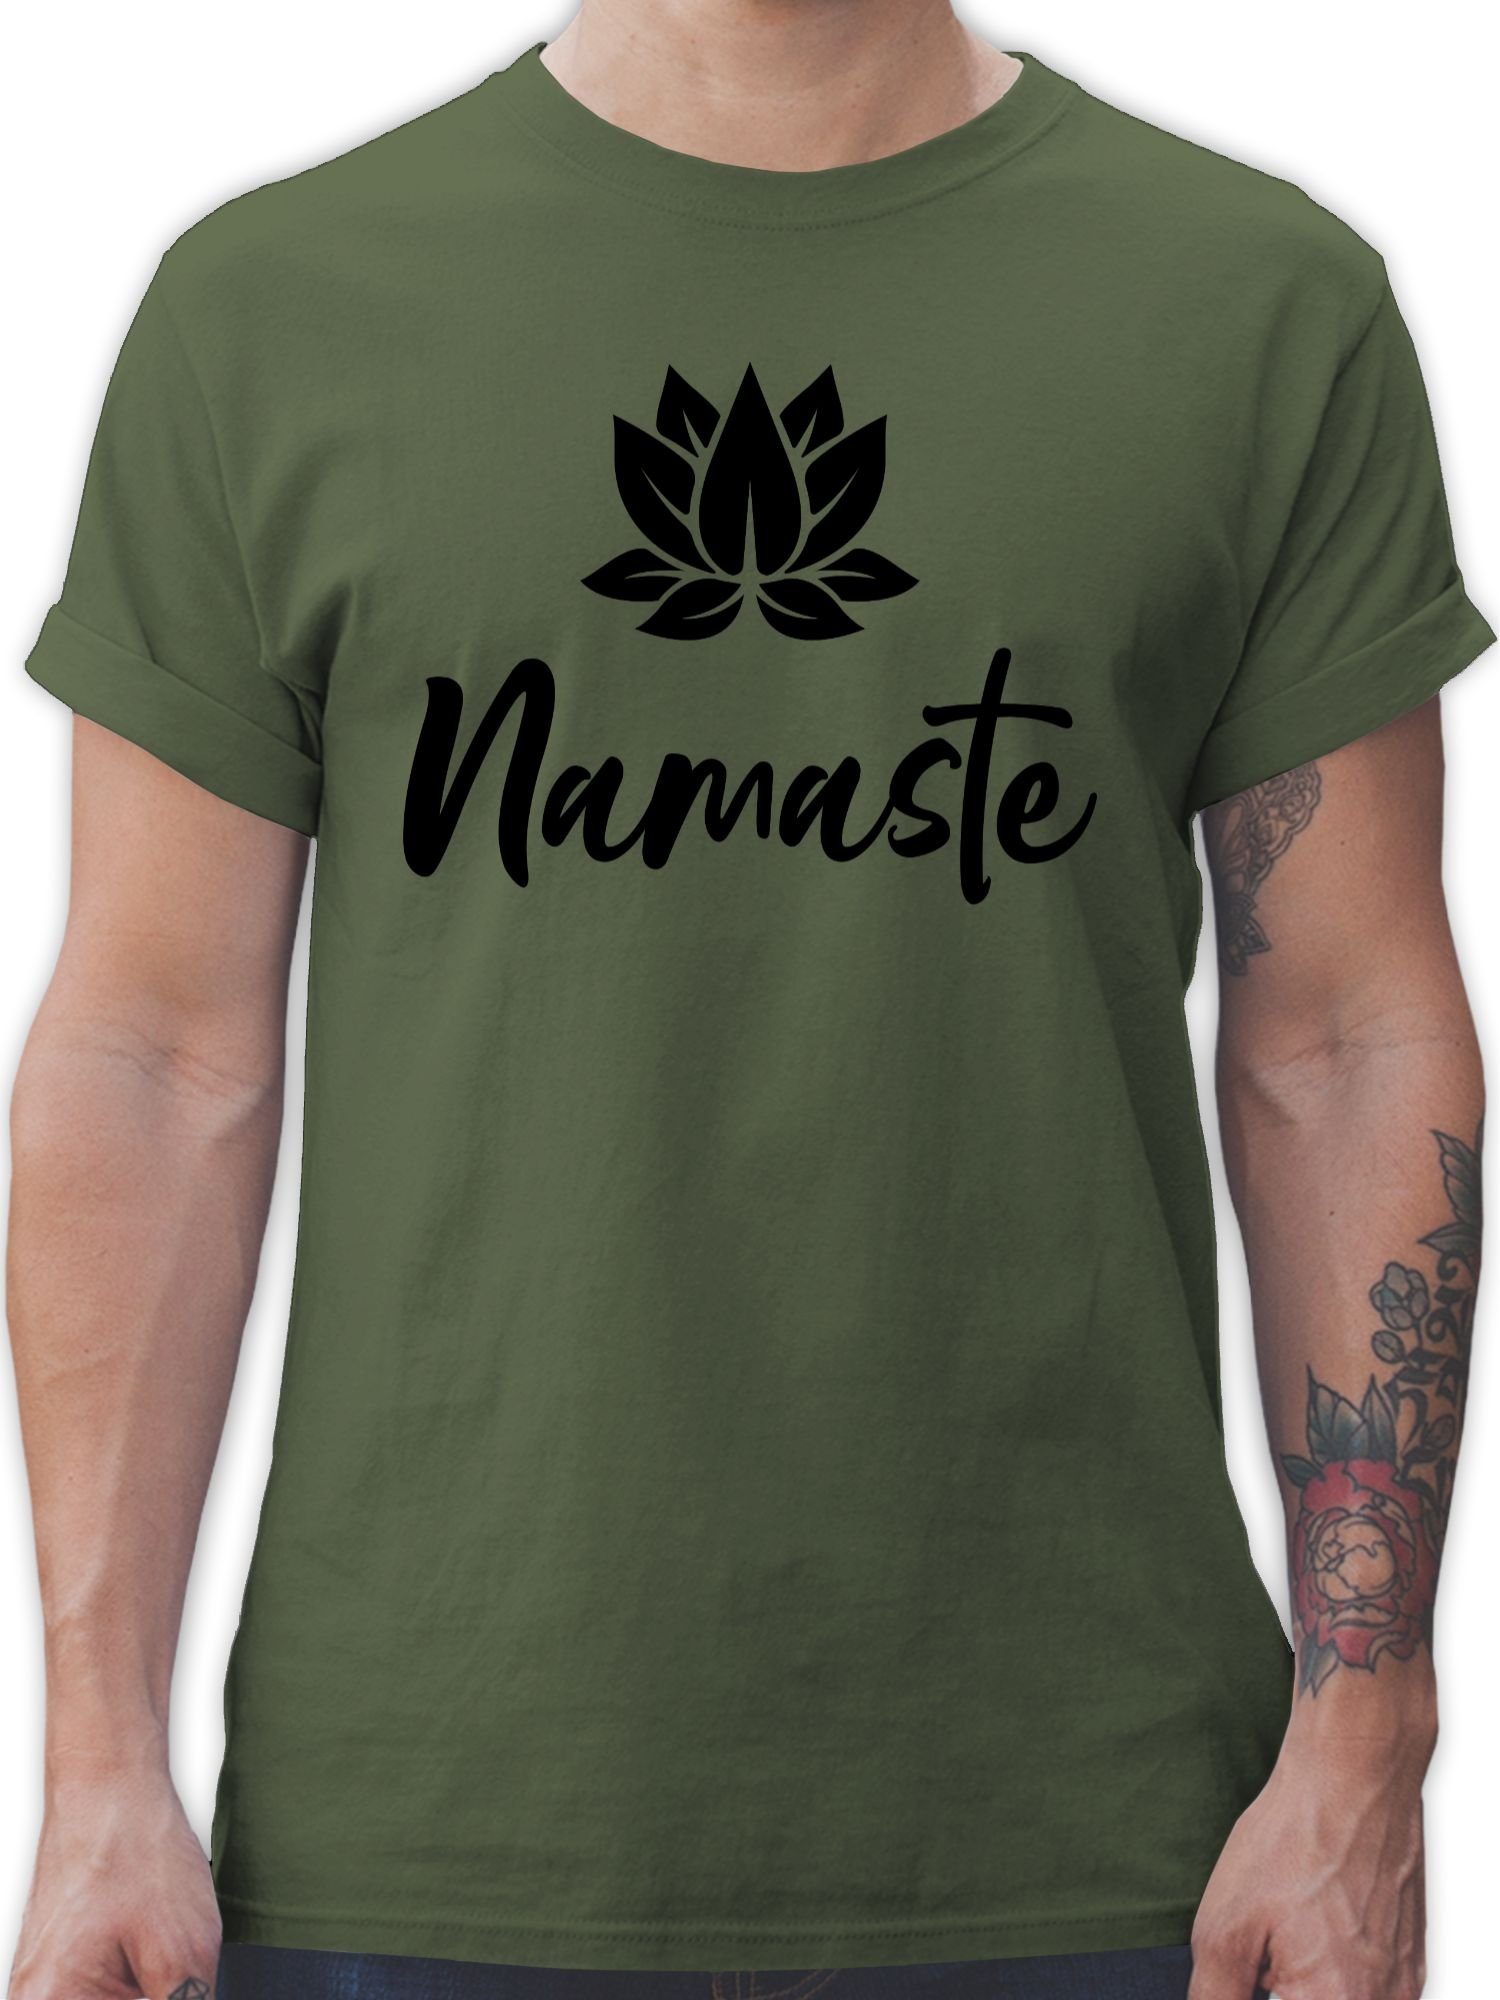 Shirtracer T-Shirt Namaste mit Lotusblüte schwarz Yoga und Wellness Geschenk 03 Army Grün